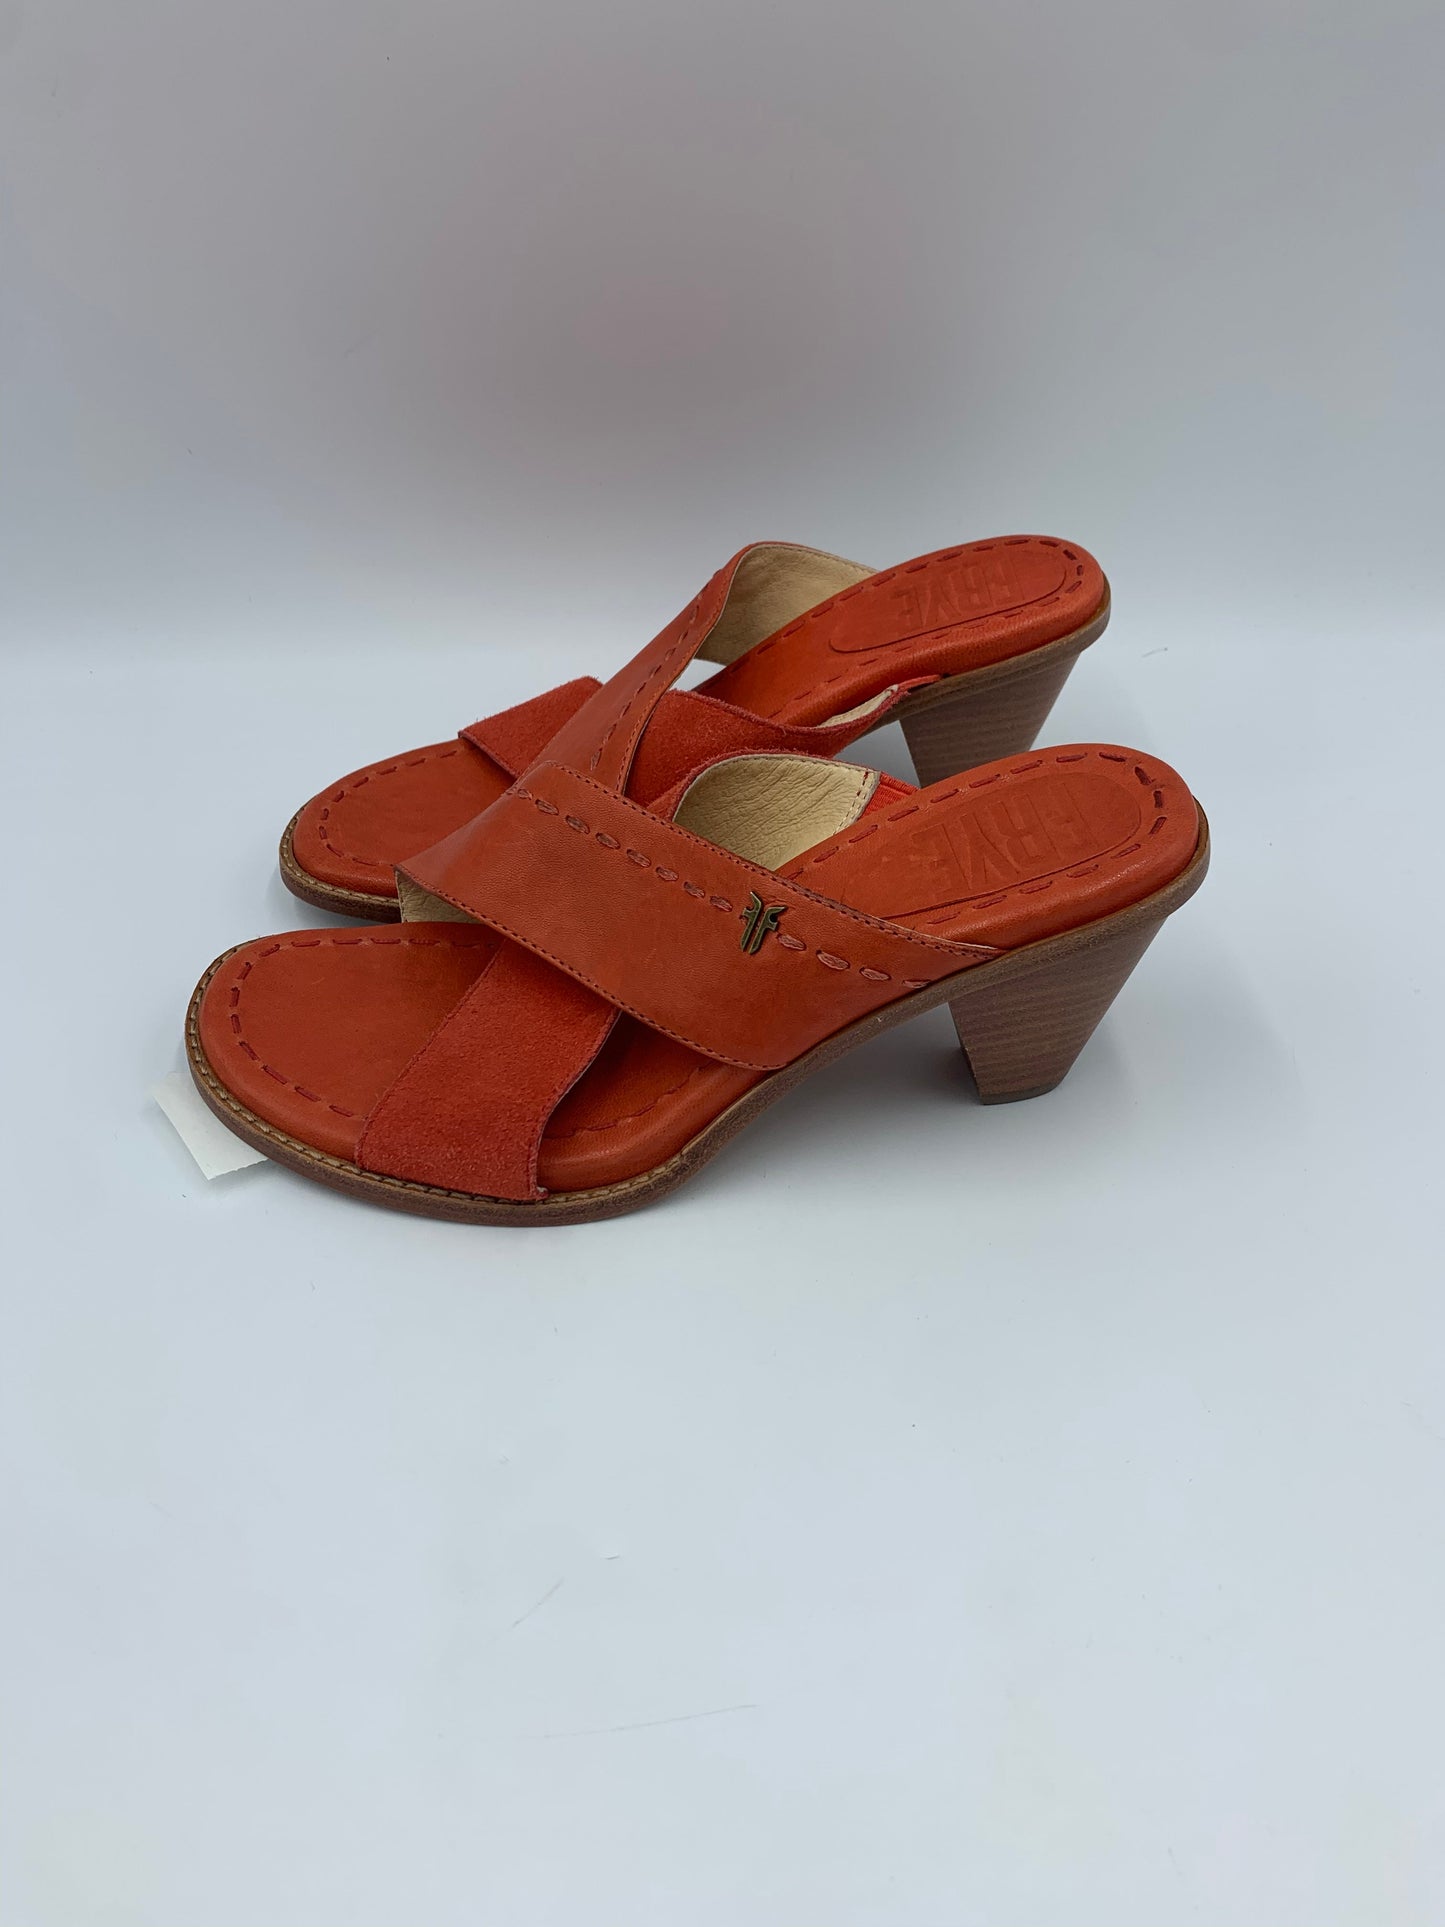 Orange Sandals Designer Frye, Size 6